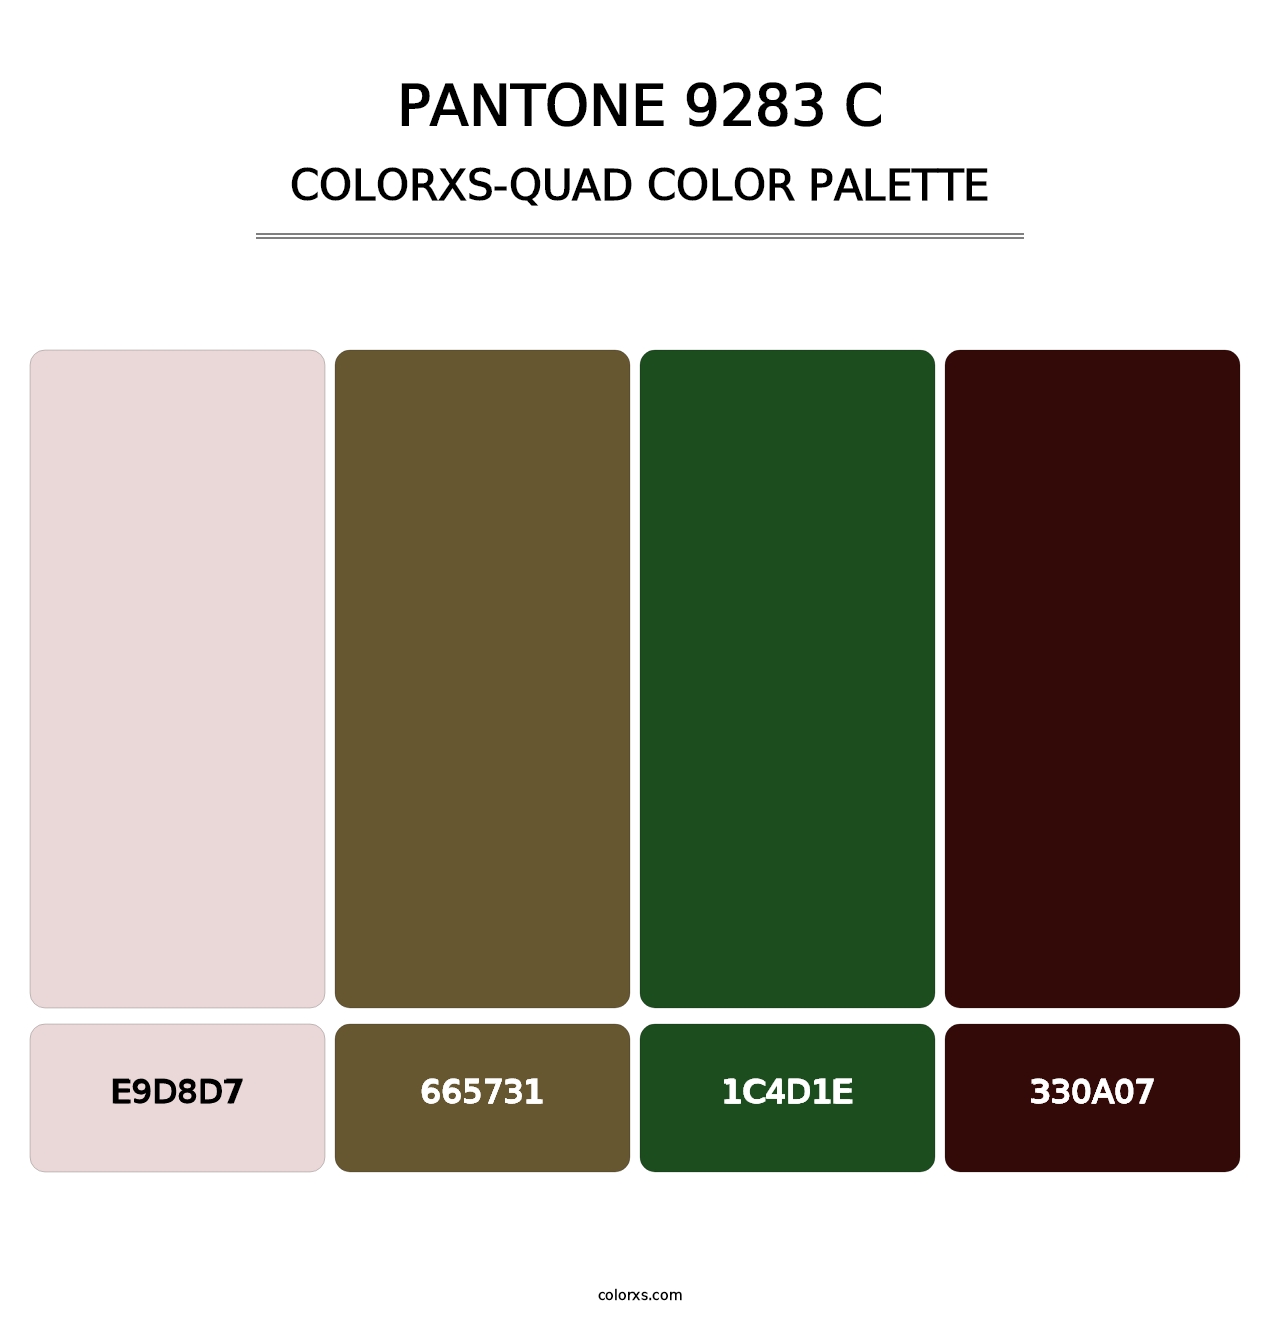 PANTONE 9283 C - Colorxs Quad Palette